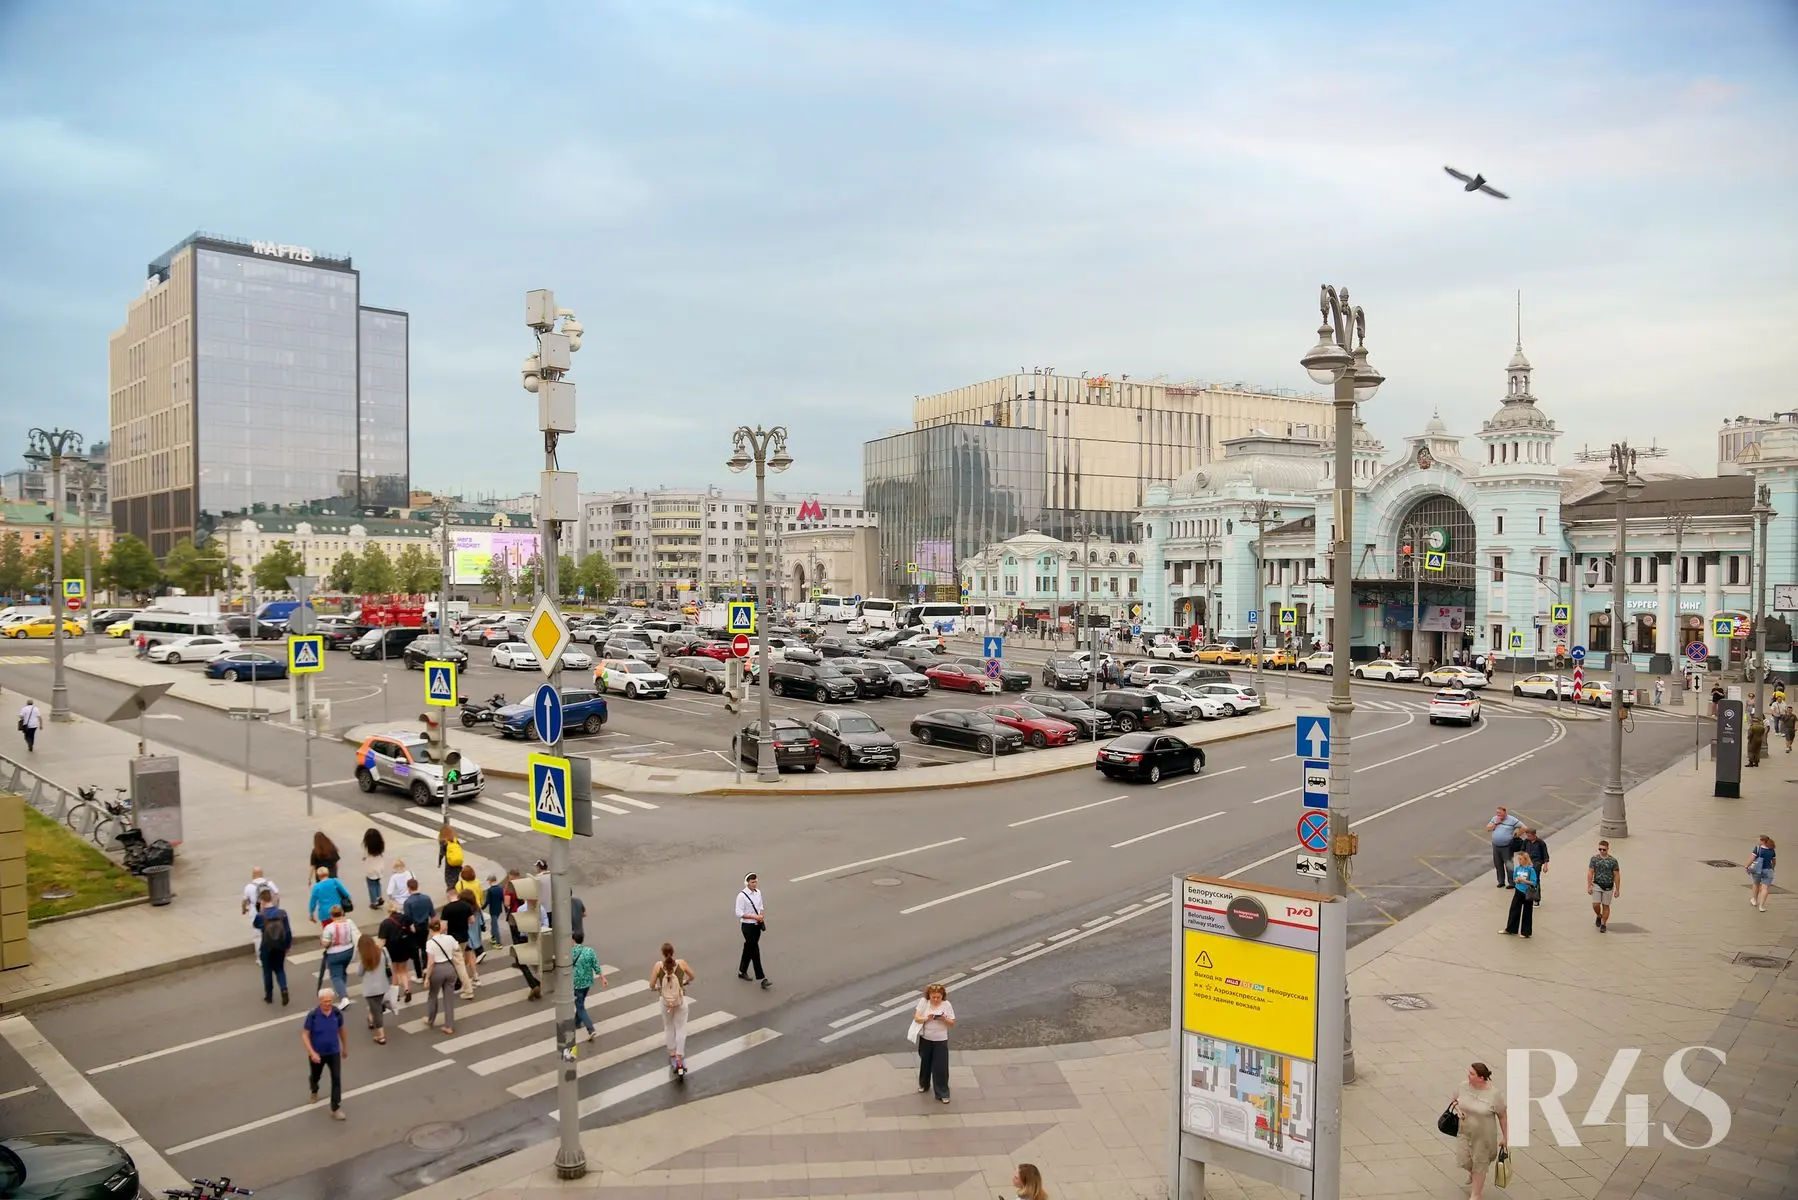 Продажа готового арендного бизнеса площадью 19.7 м2 в Москве: Грузинский Вал, 28/45 R4S | Realty4Sale